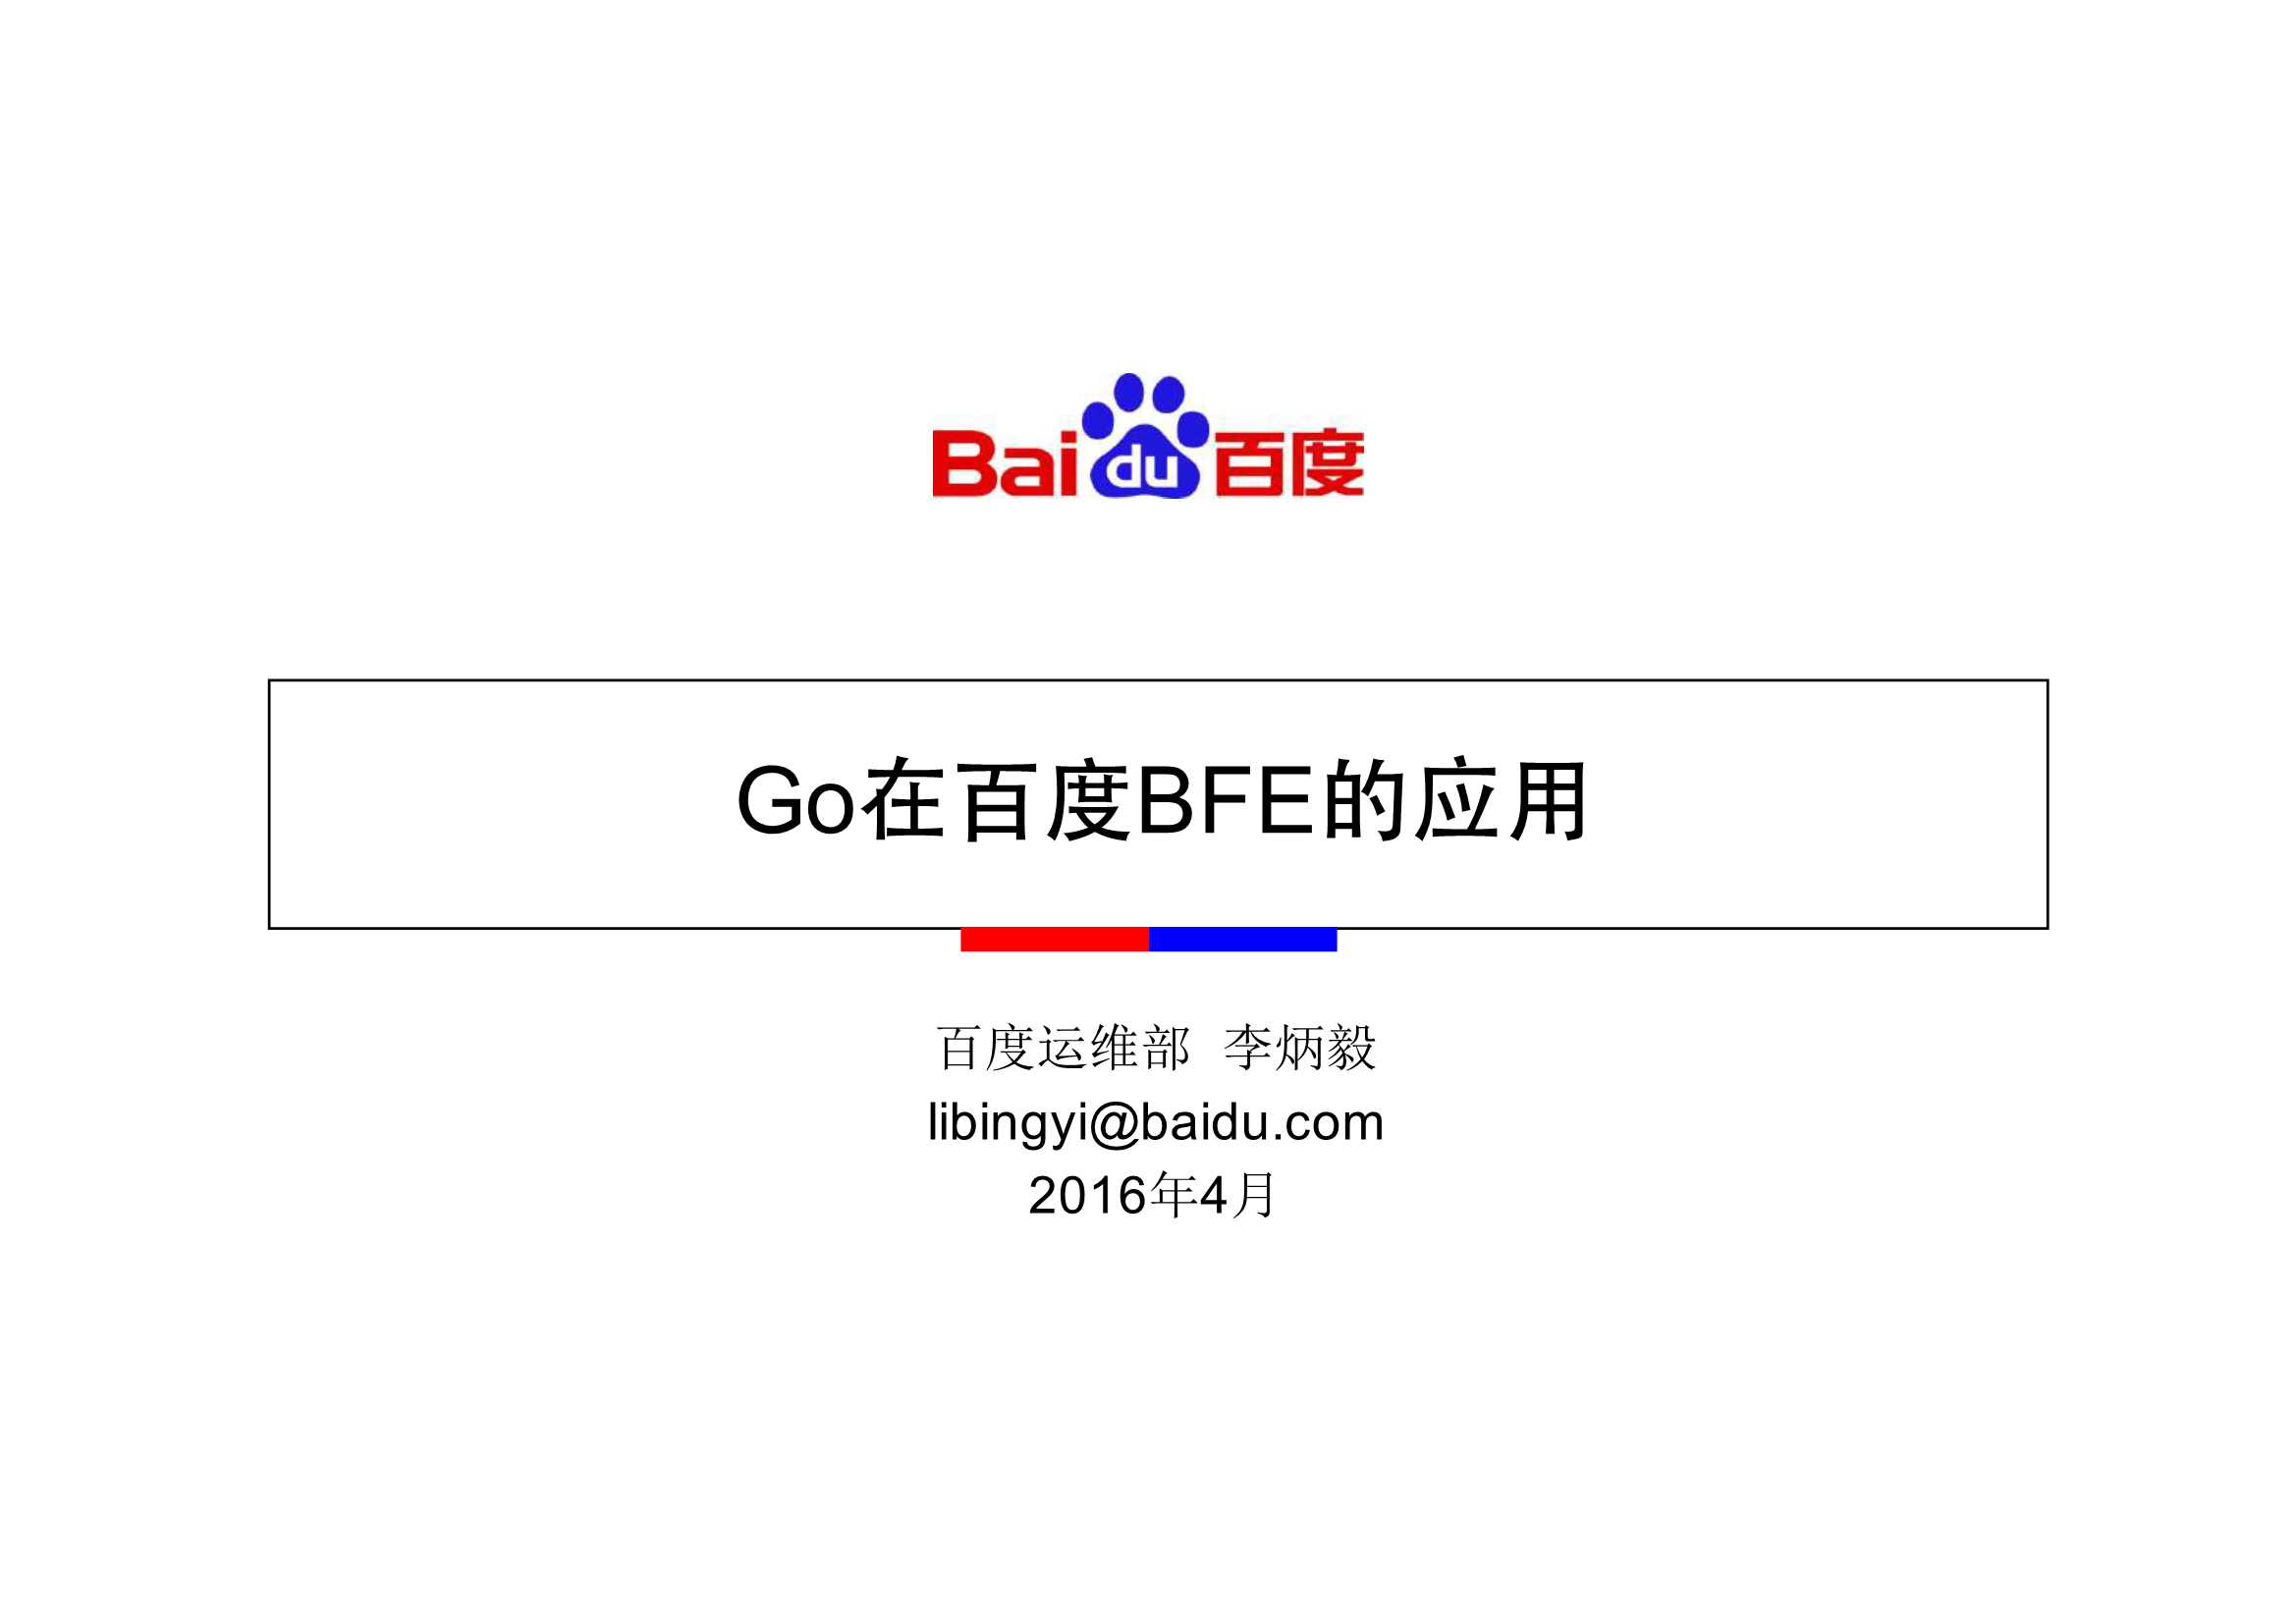 李炳毅 Go在百度BFE的应用 for Gopher China 2016-2016-31页